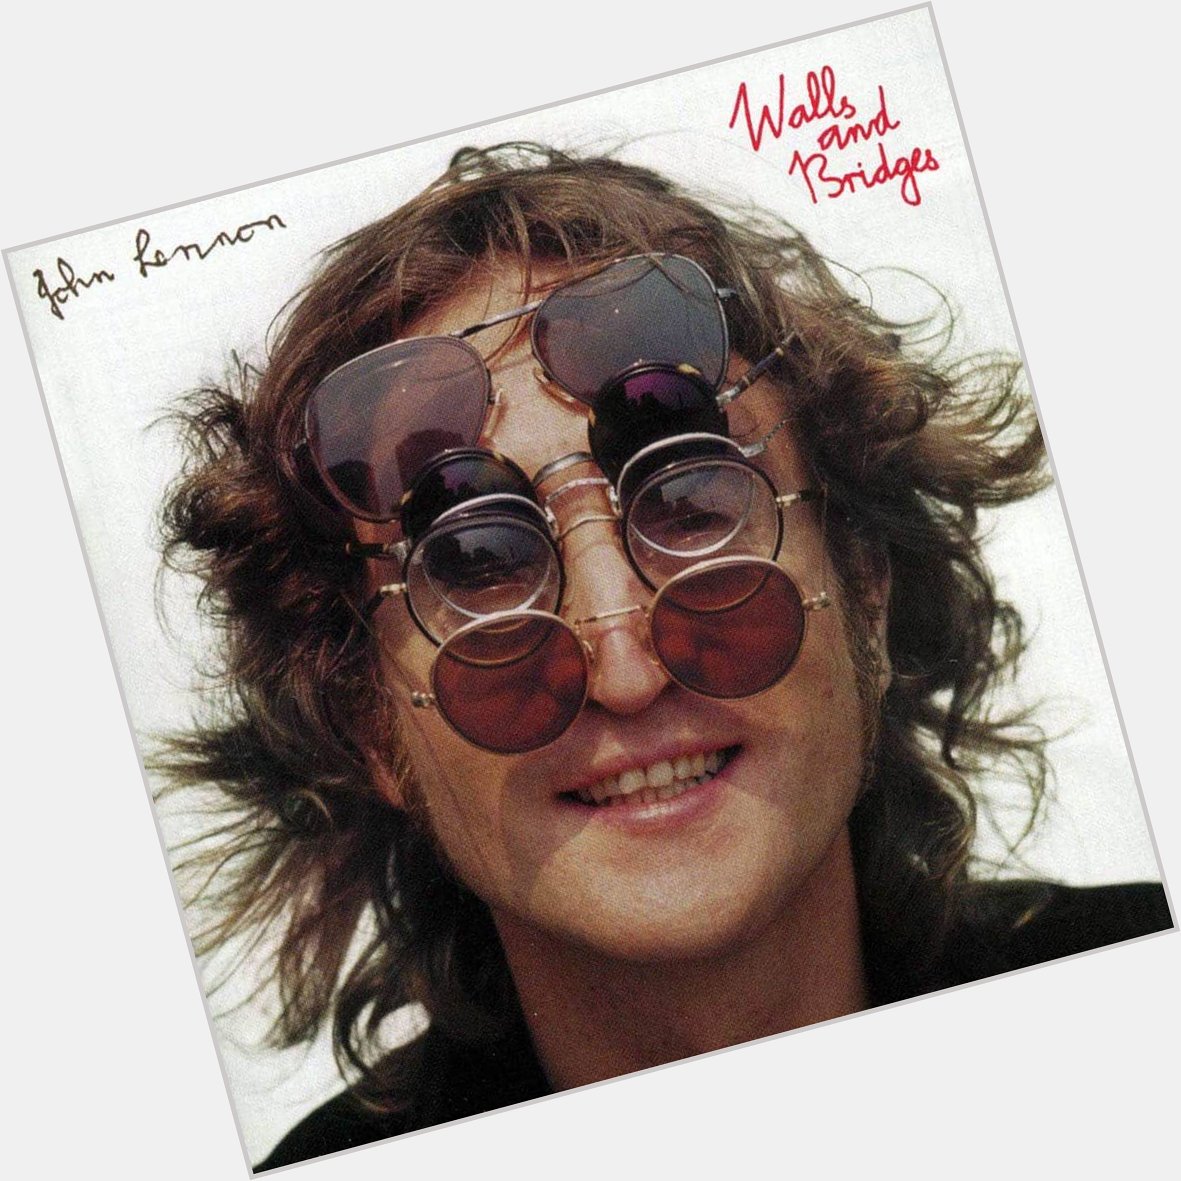 Happy birthday to John Lennon! 